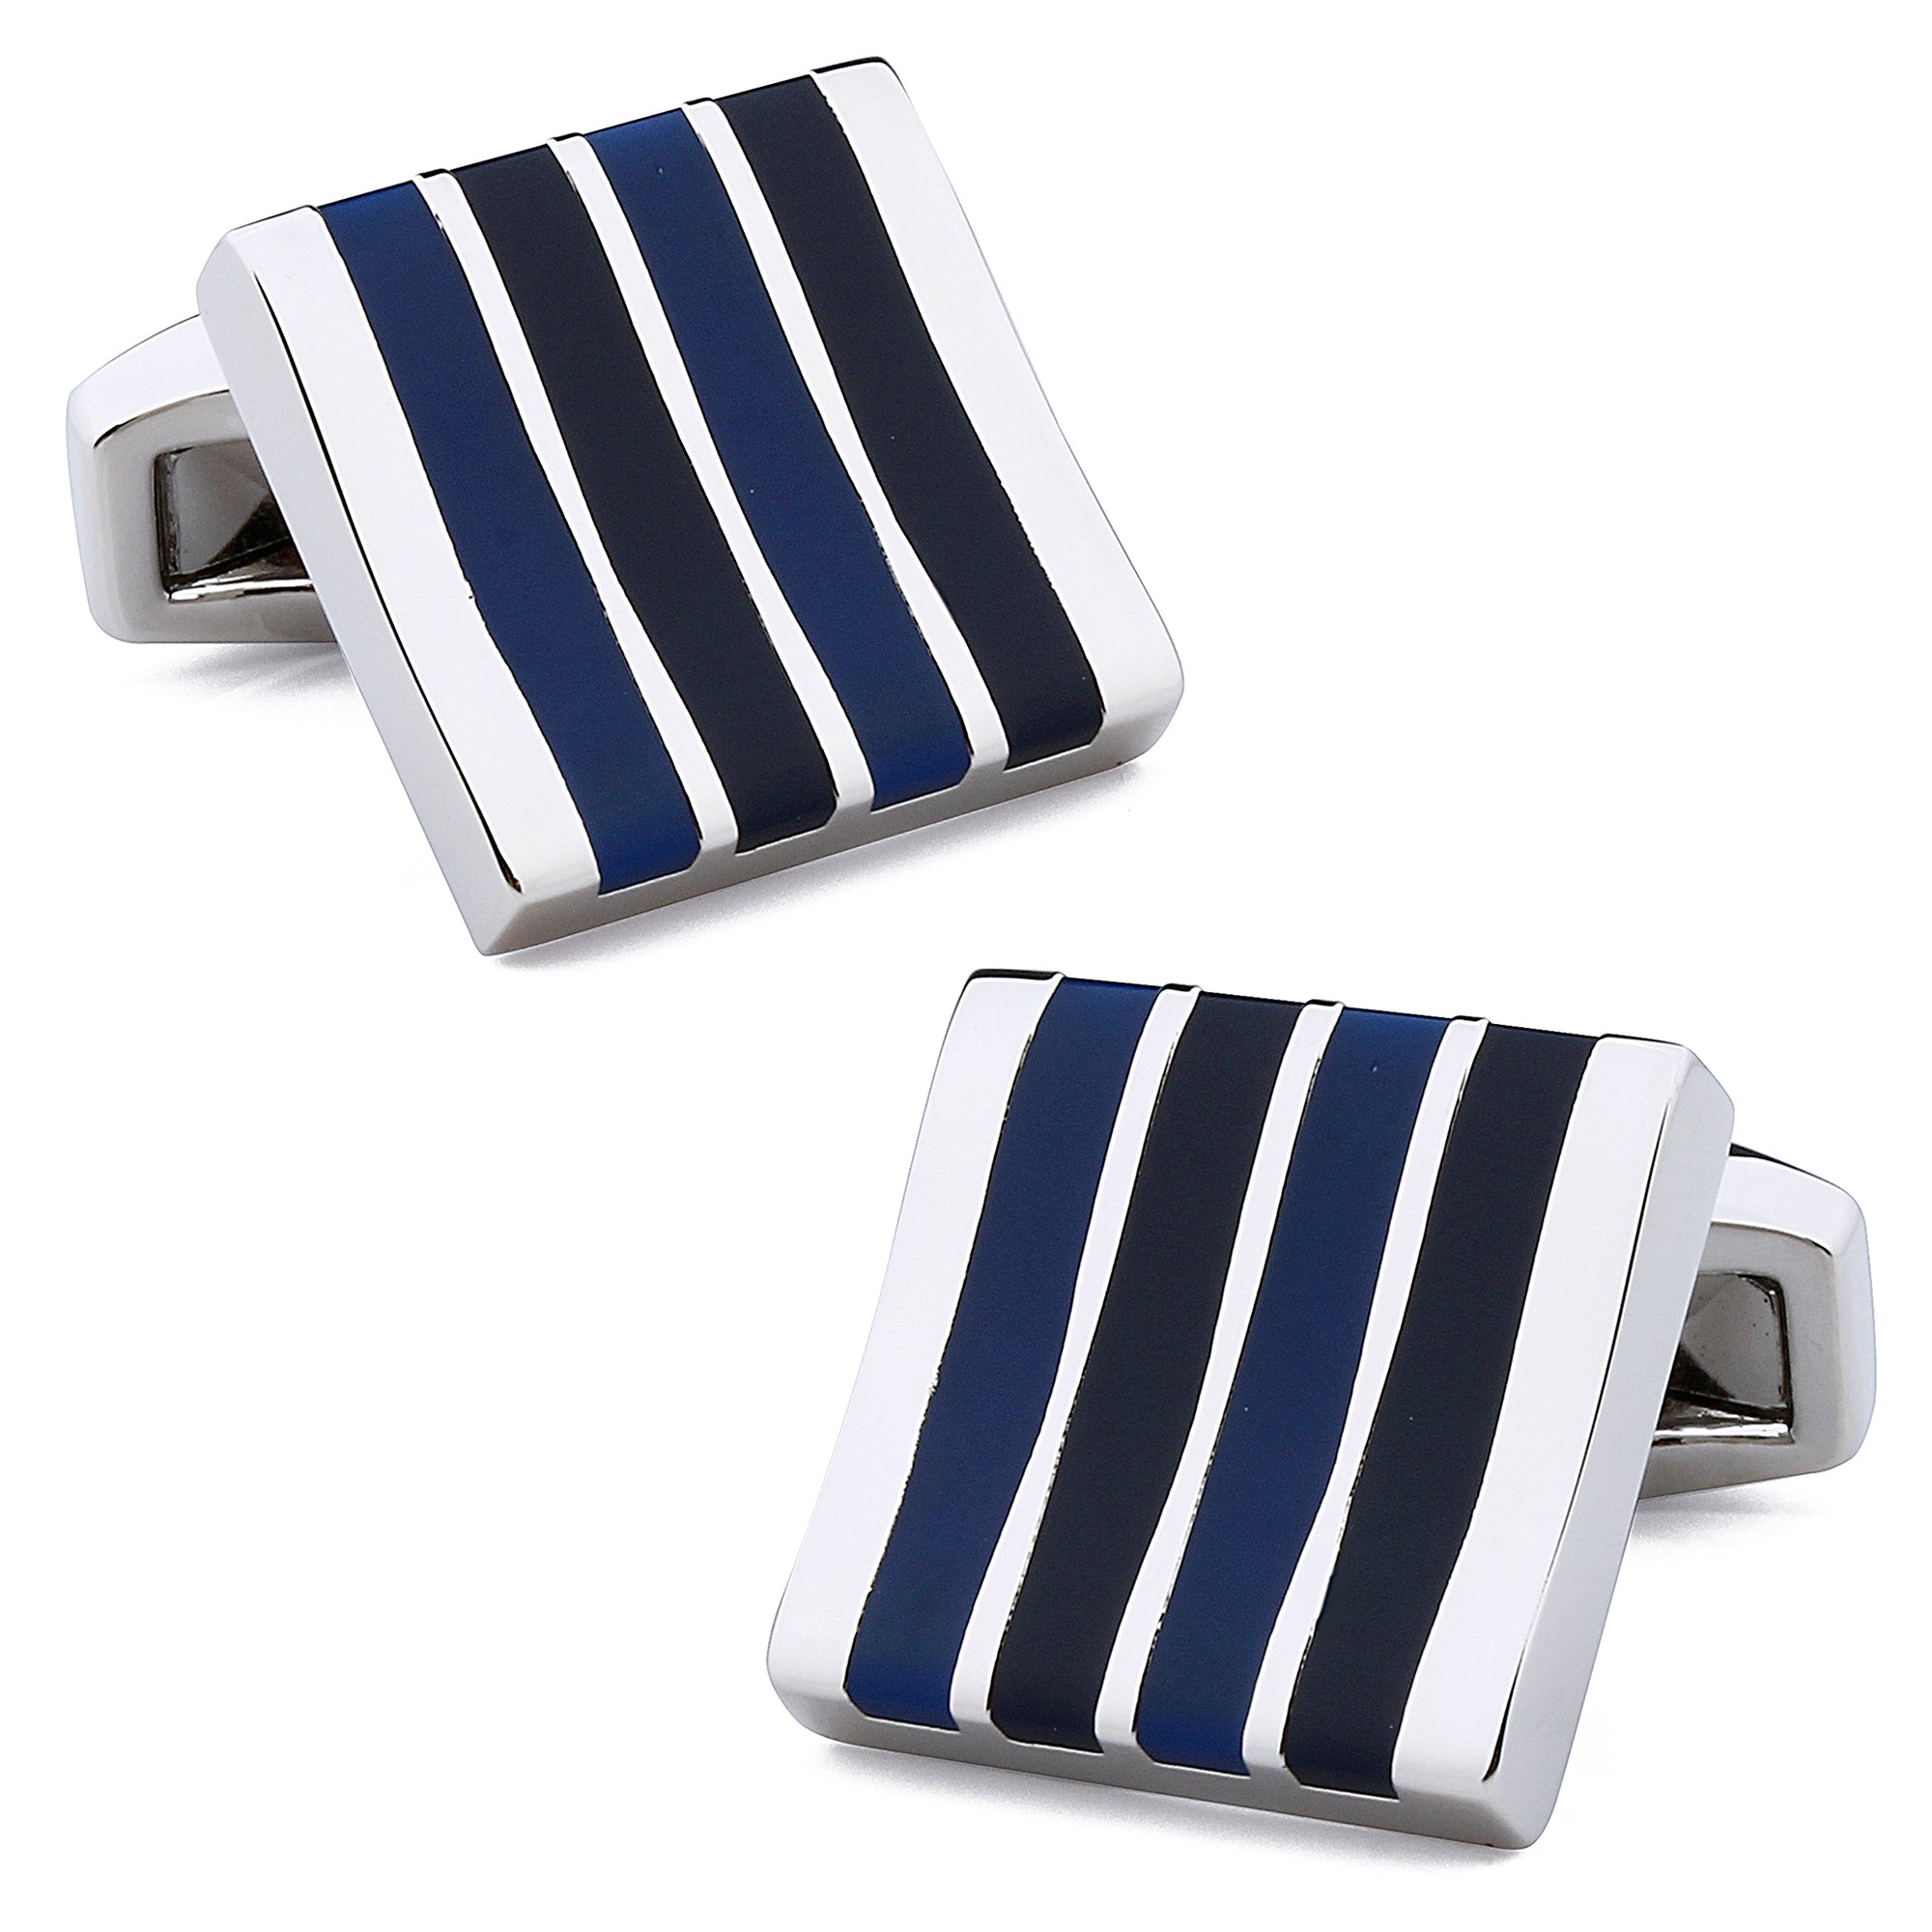 Blue Enamel Stripes Silver Cufflinks